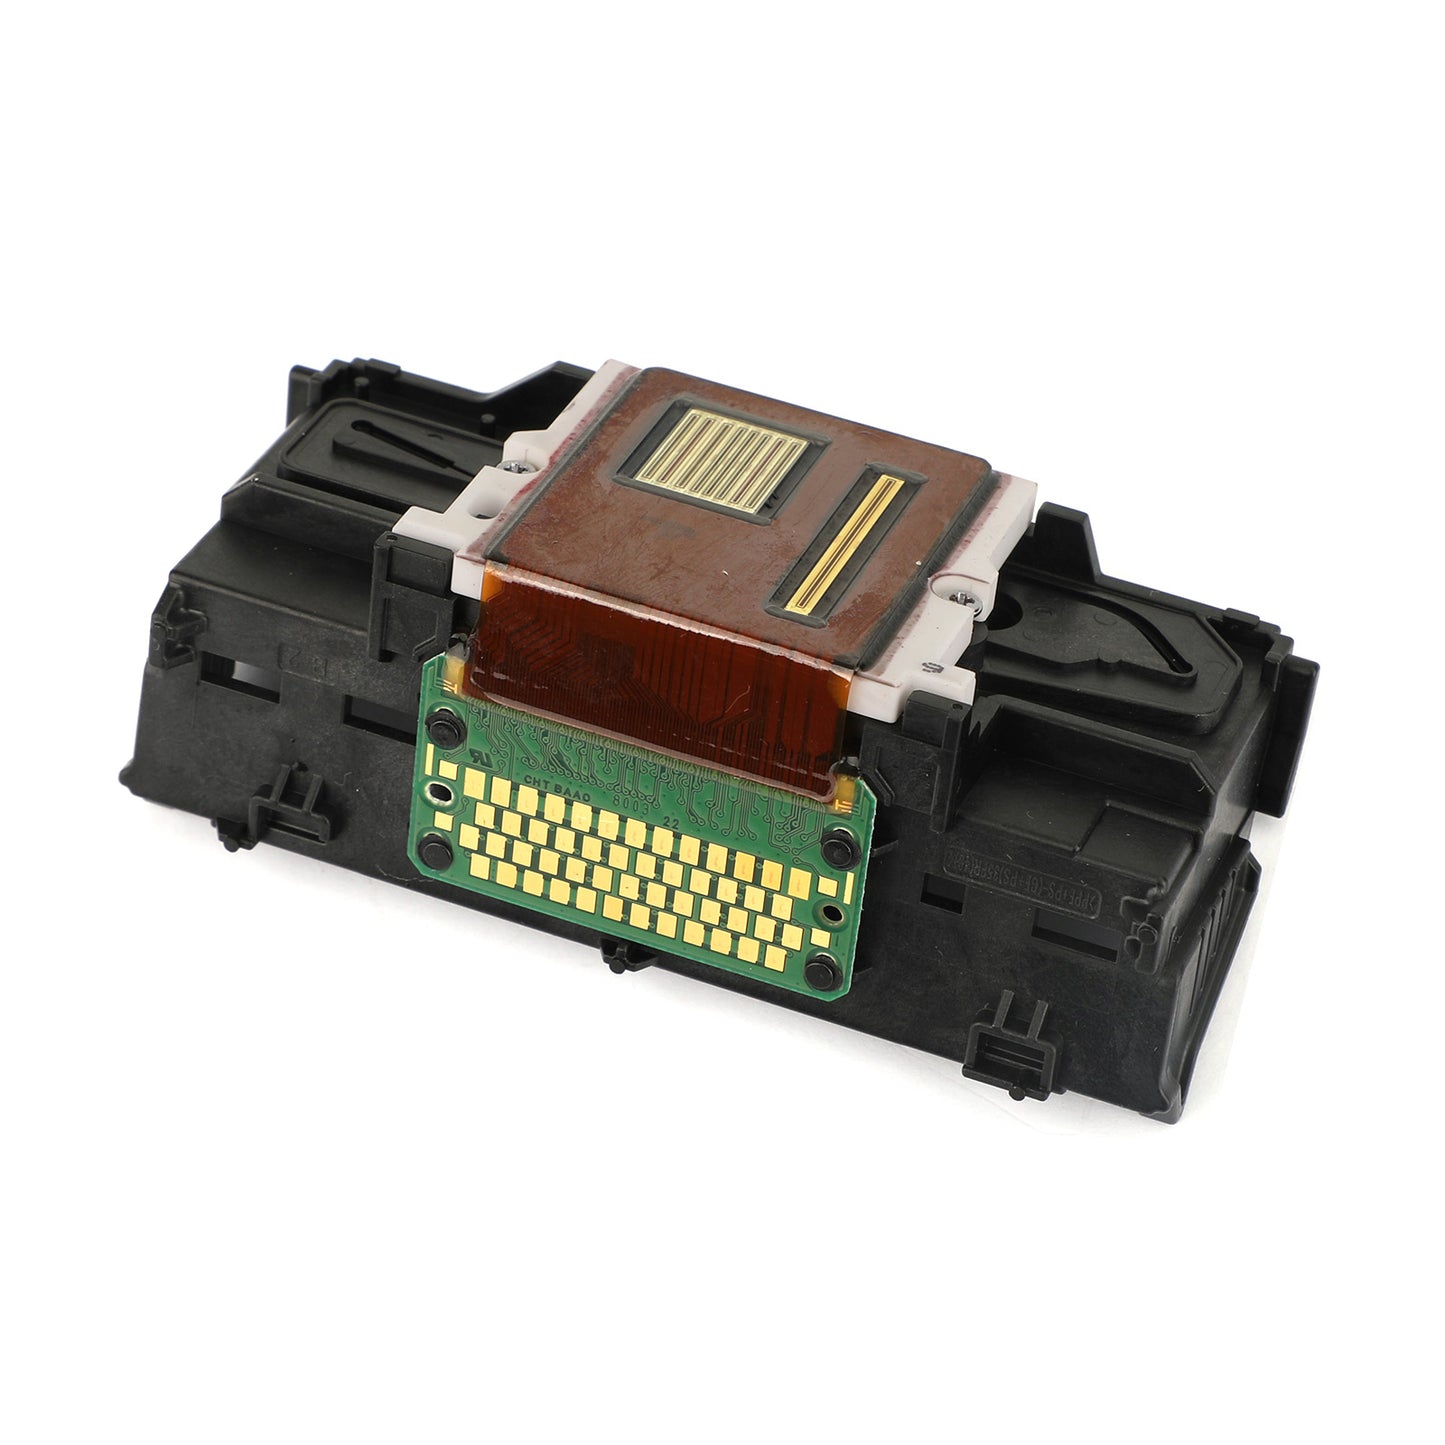 Accessoires d'imprimante de tête d'impression QY6-0090 pour TS8020 TS9020 TS8040 8050 8070 8080